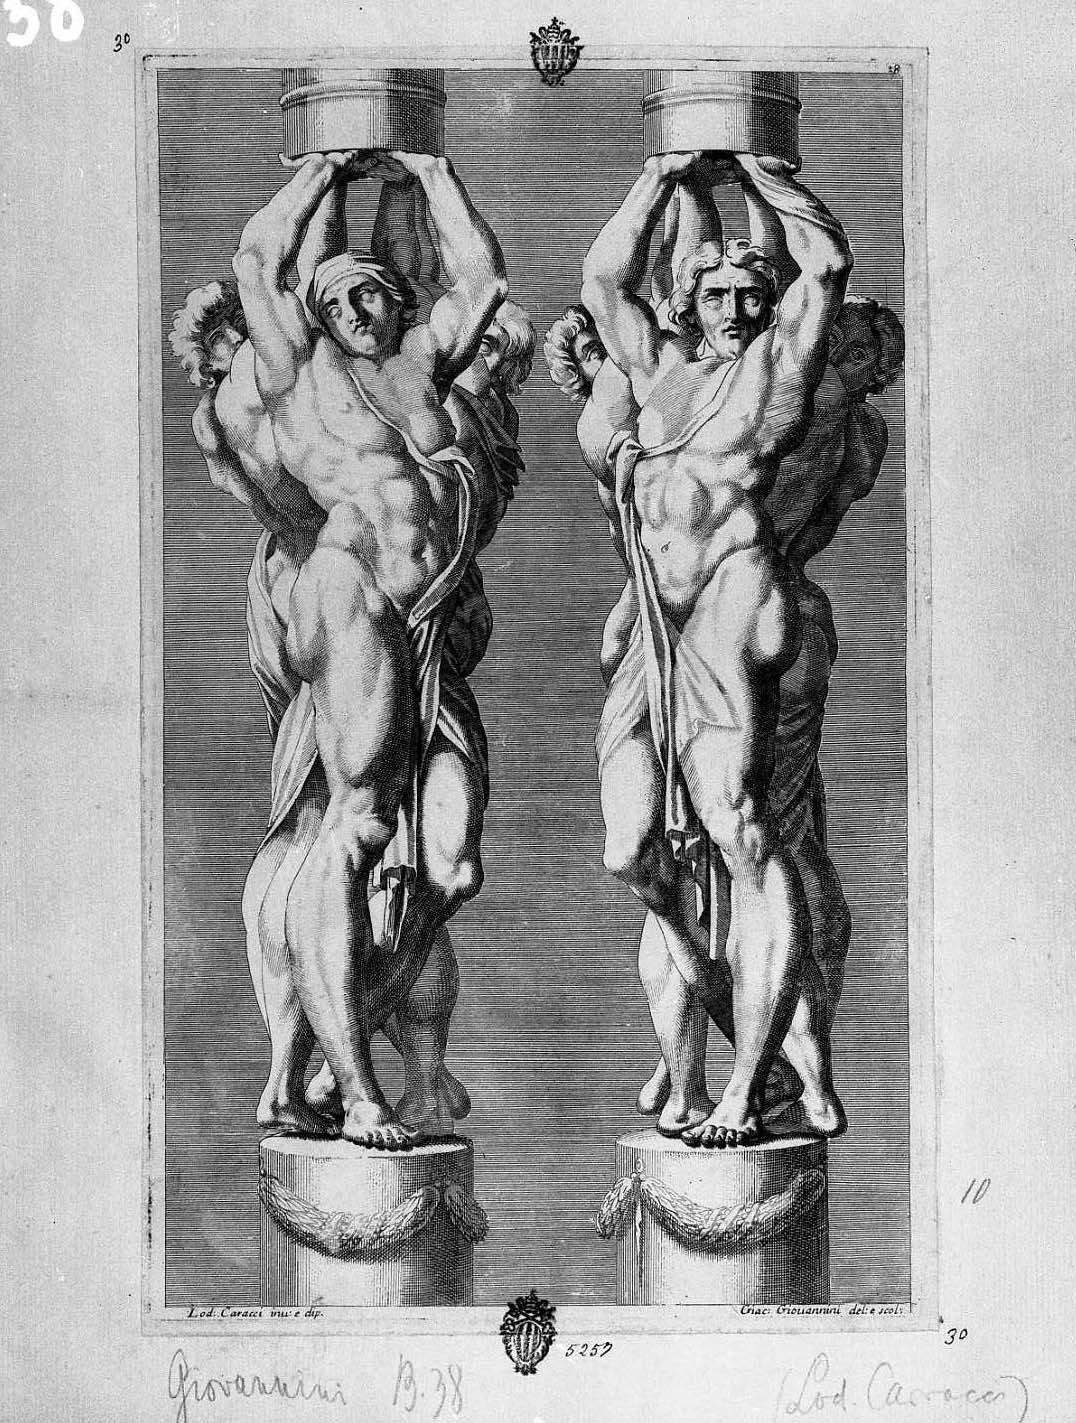 due coppie di tre giganti ciascuno (stampa smarginata) di Carracci Ludovico, Giovannini Giacomo (fine/inizio secc. XVII/ XVIII)